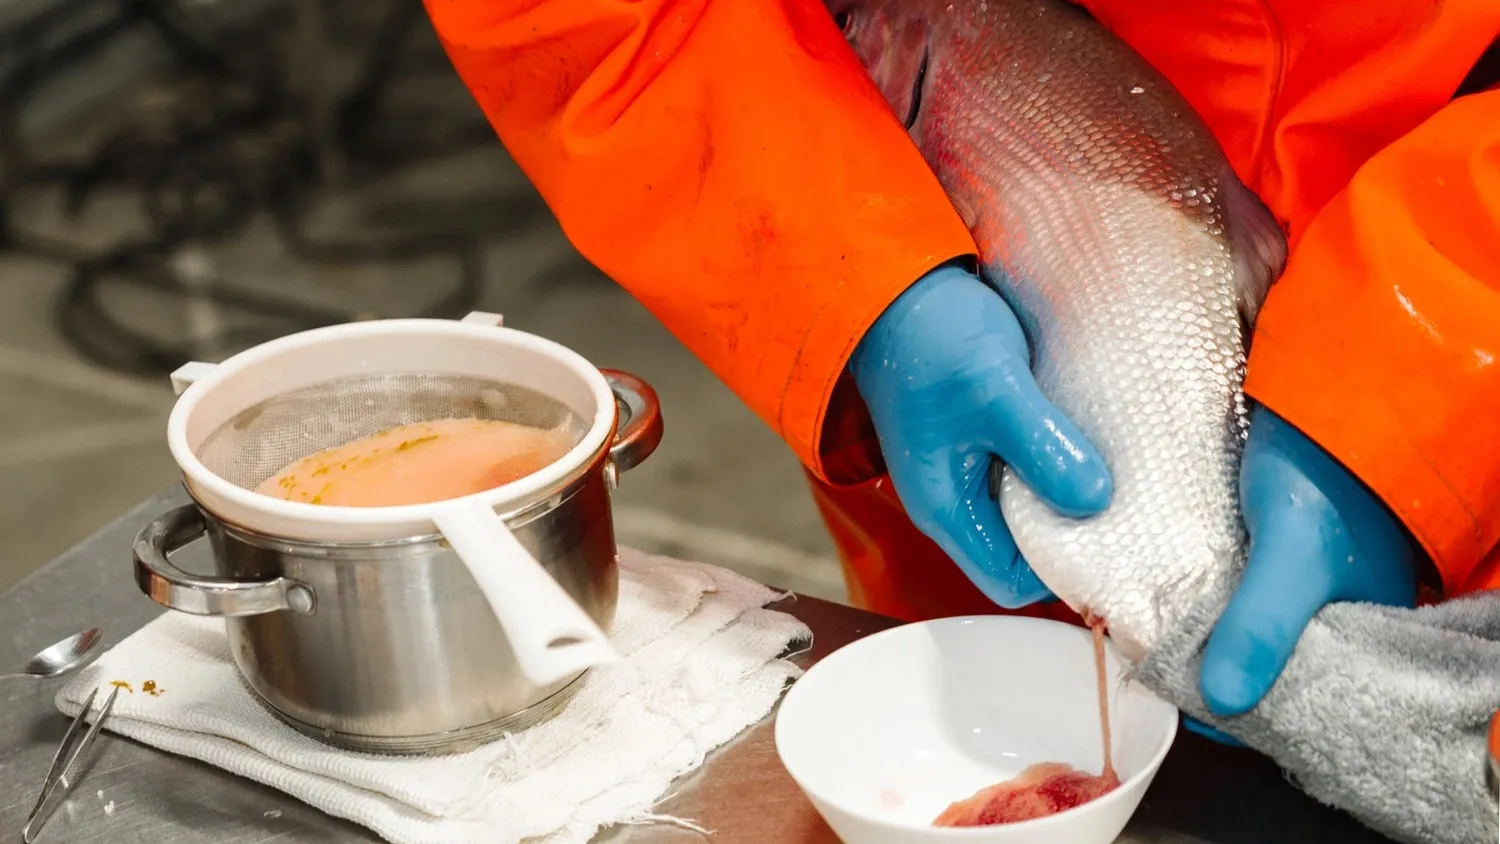 Процесс добычи икры муксуна – полностью ручной и безопасный для рыб. Фото: Юлия Чудинова / "Ямал-Медиа"